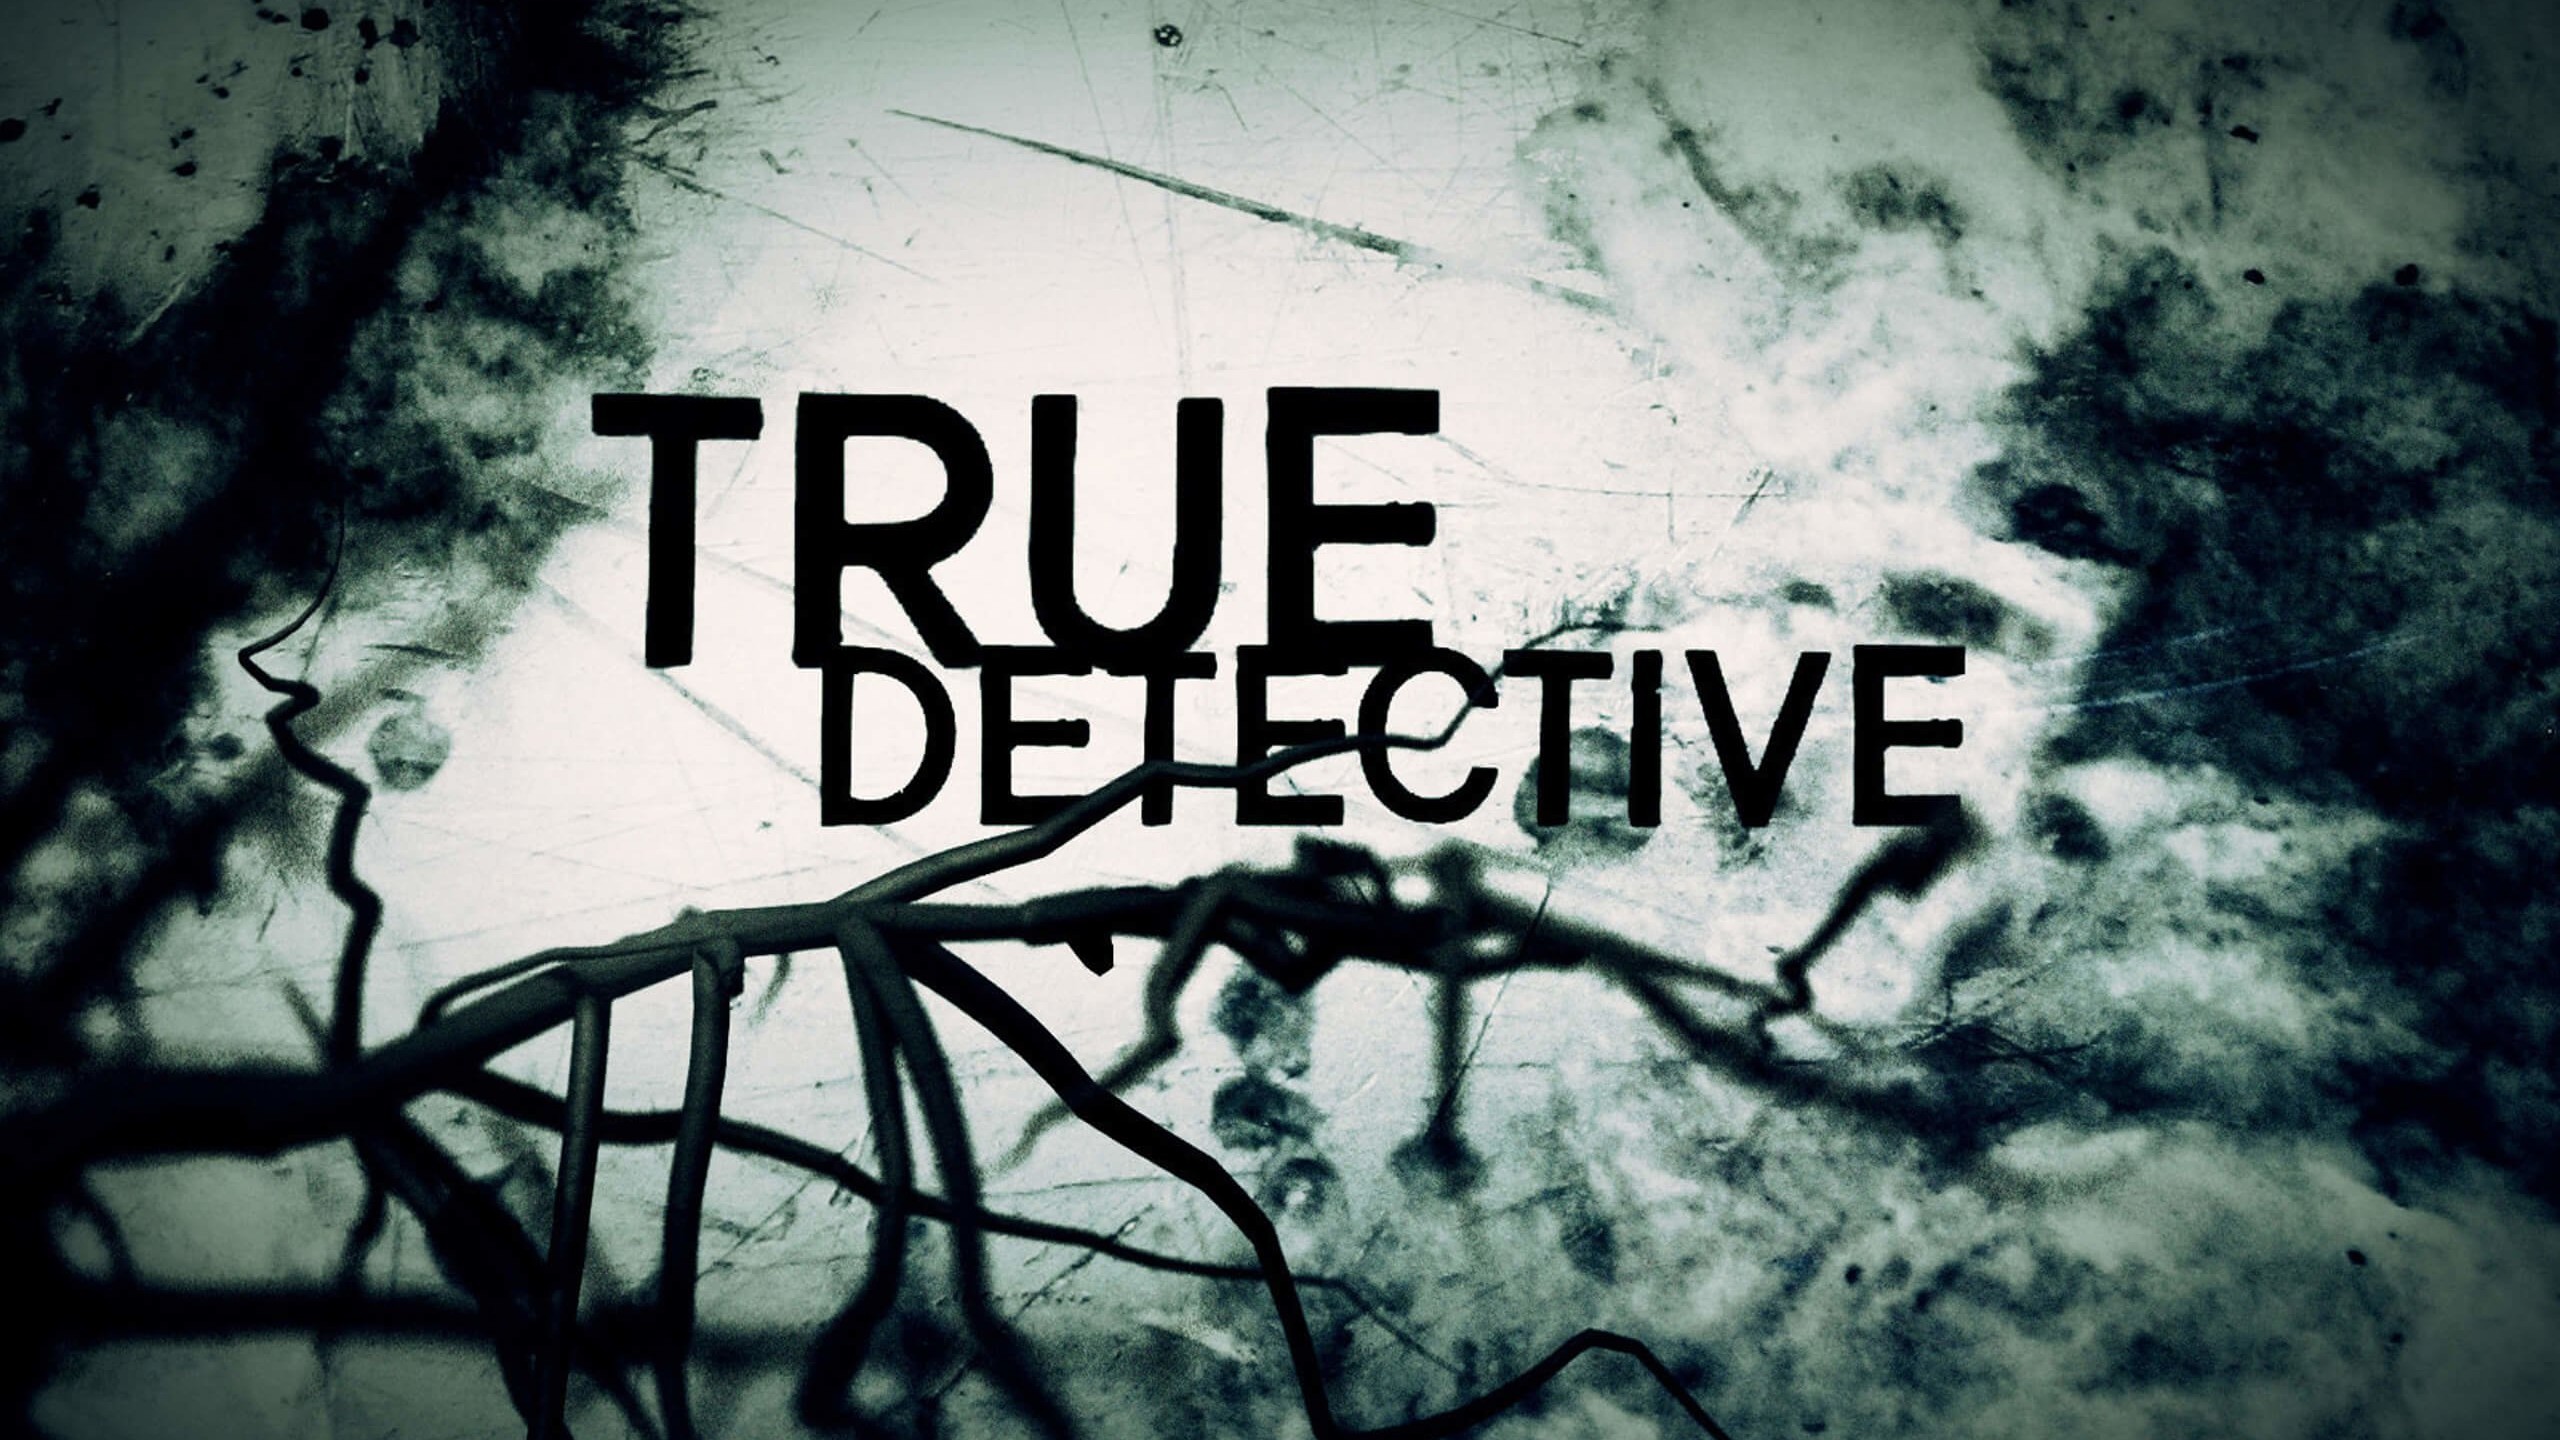 True Detective Wallpaper for Social Media YouTube Channel Art